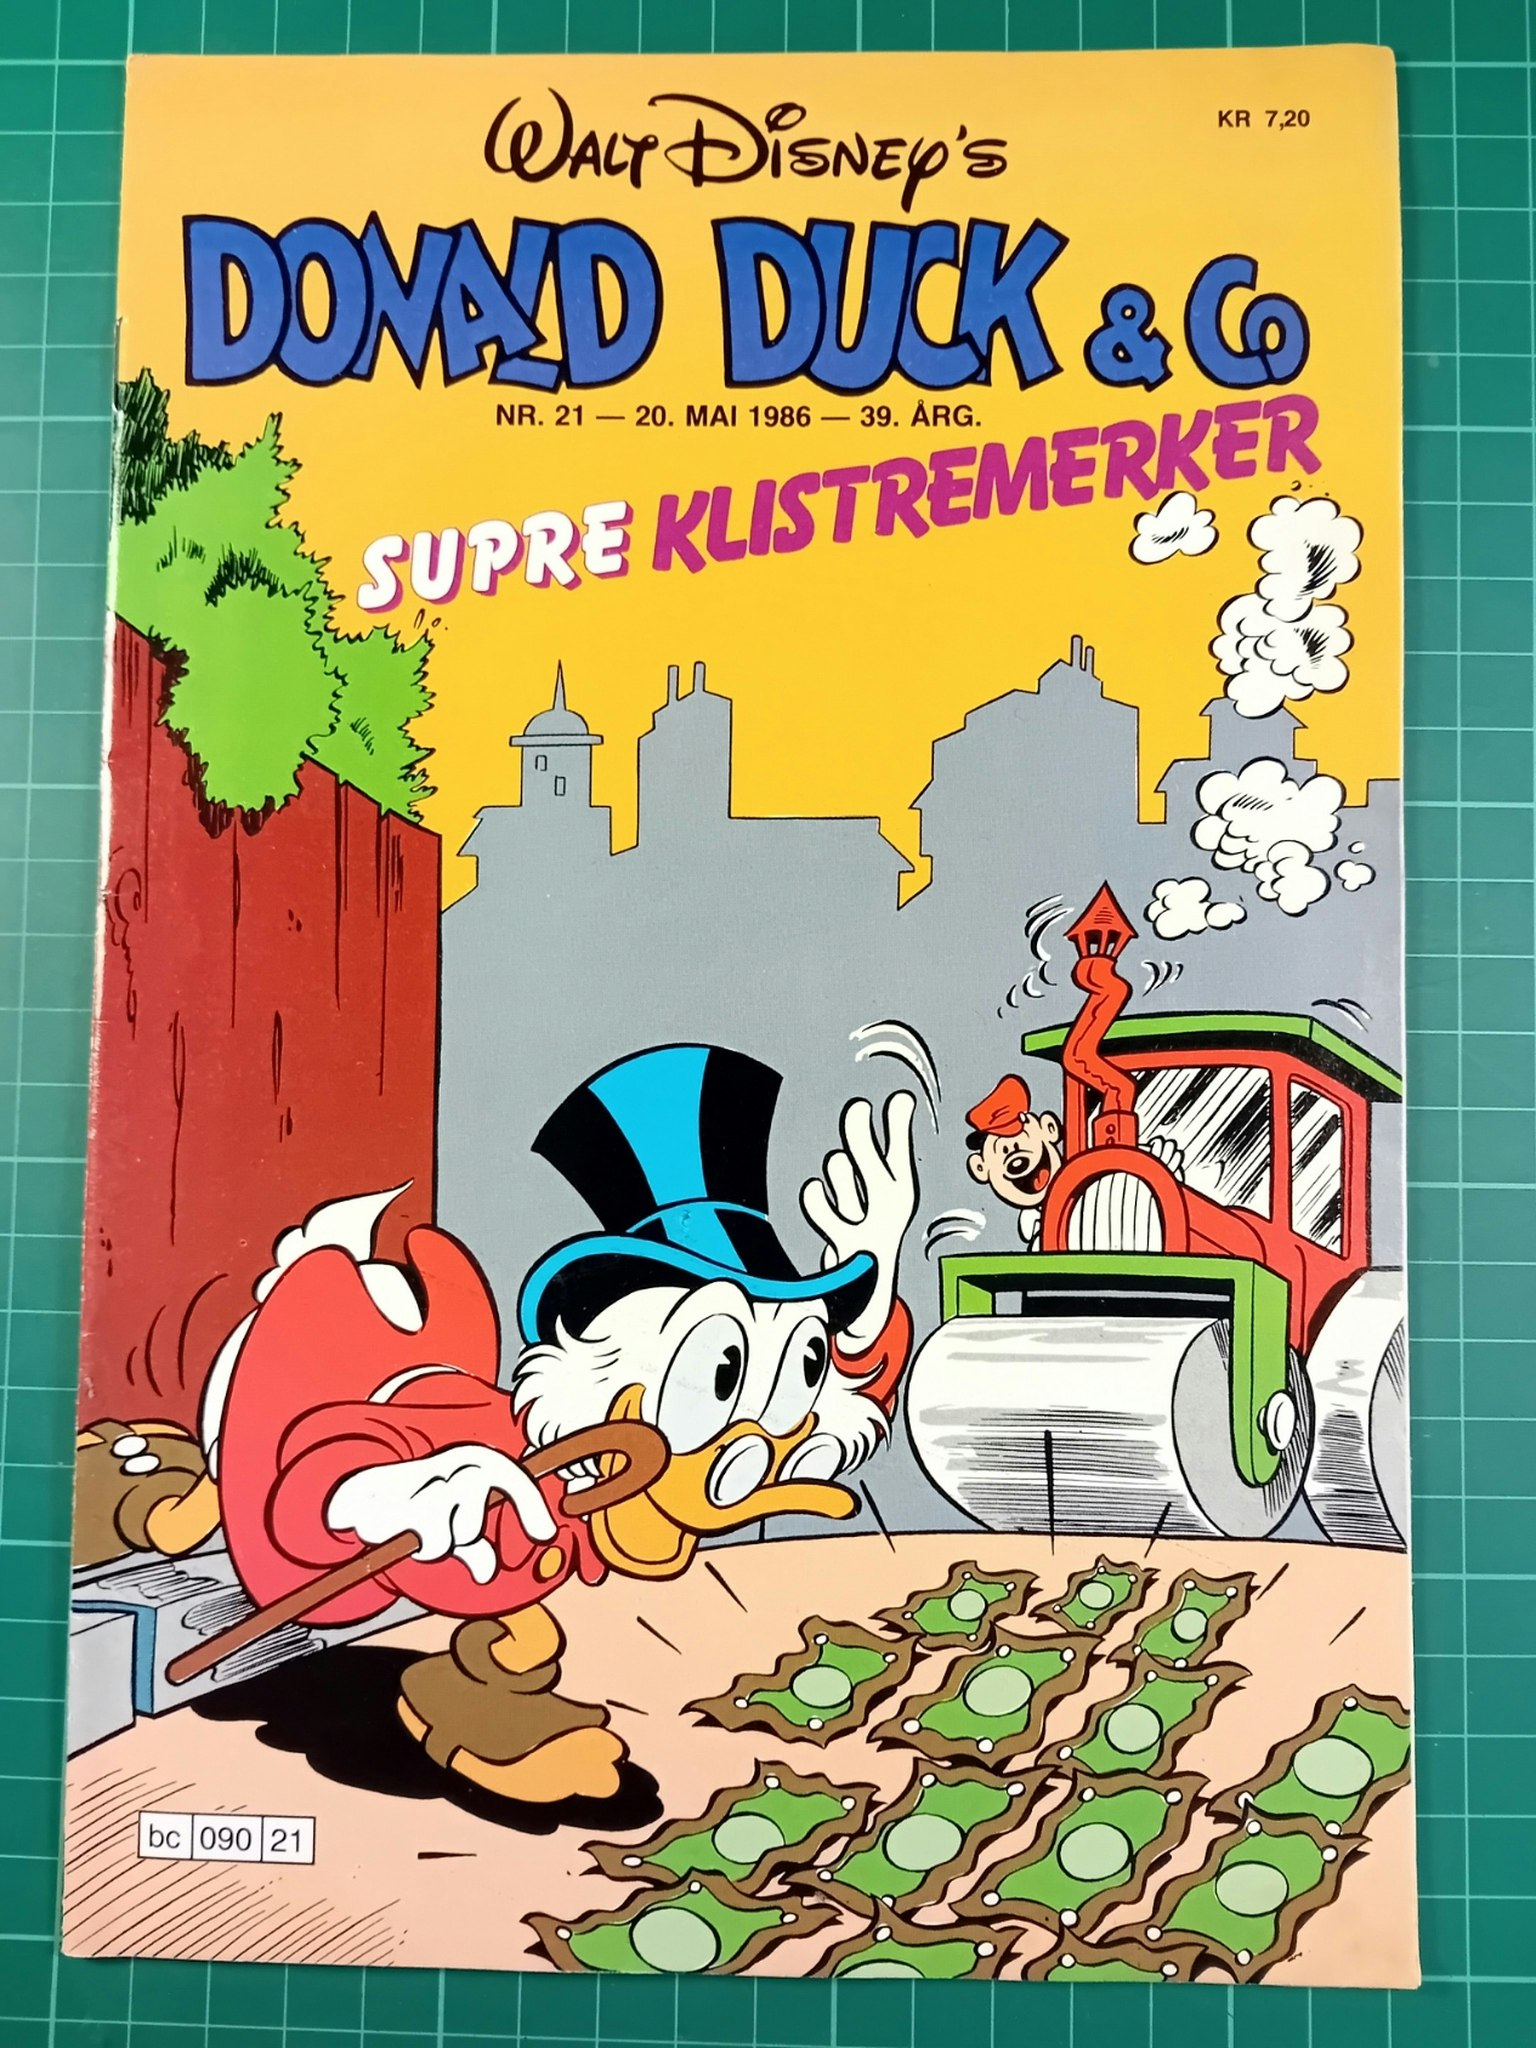 Donald Duck & Co 1986 - 21 m/klistremerker